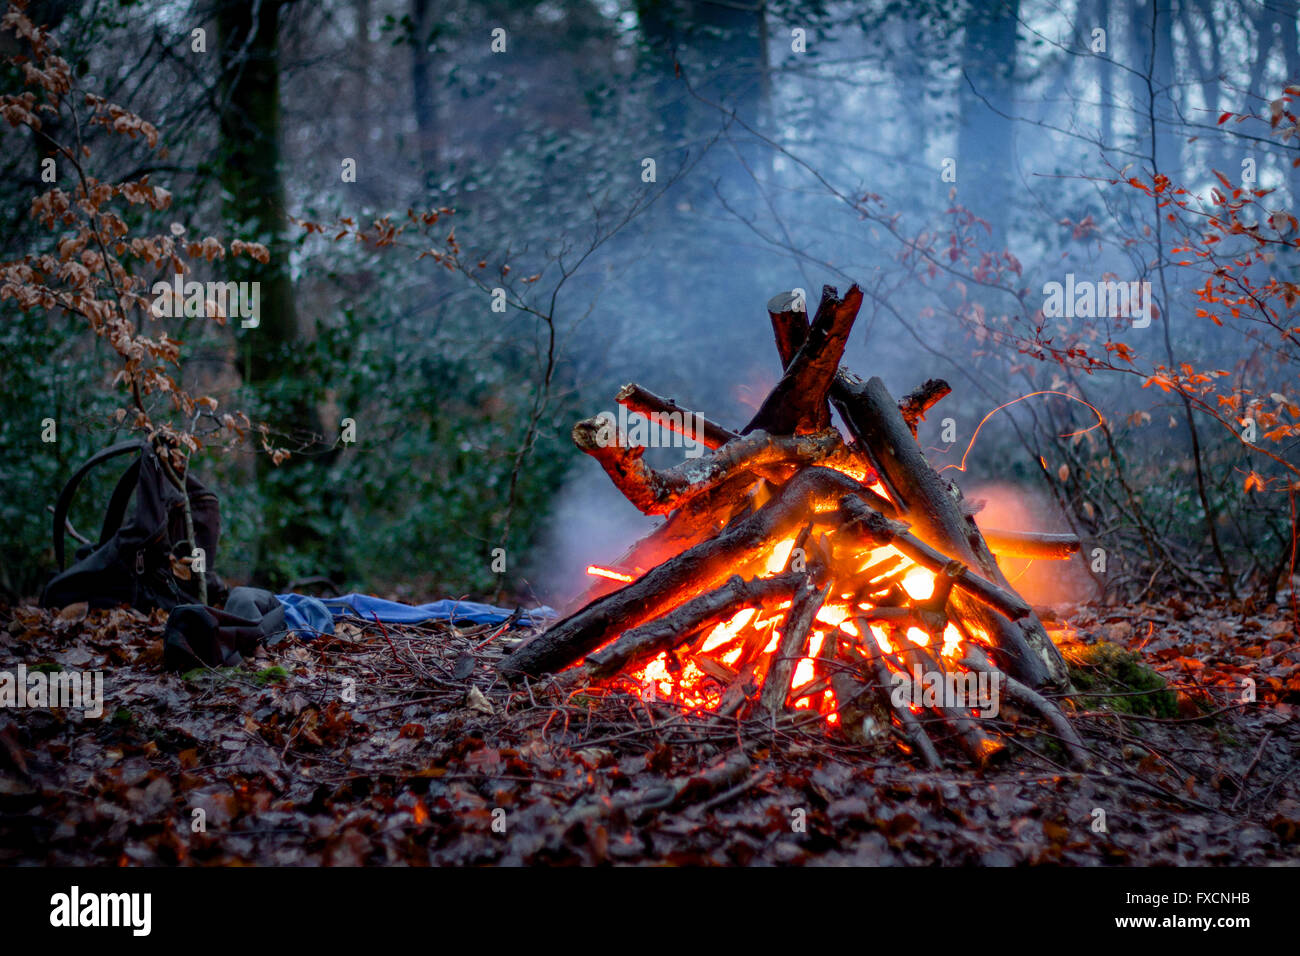 Eine glühende Lagerfeuer im Wald, mit Rucksack und Bäume im Hintergrund. Stockfoto